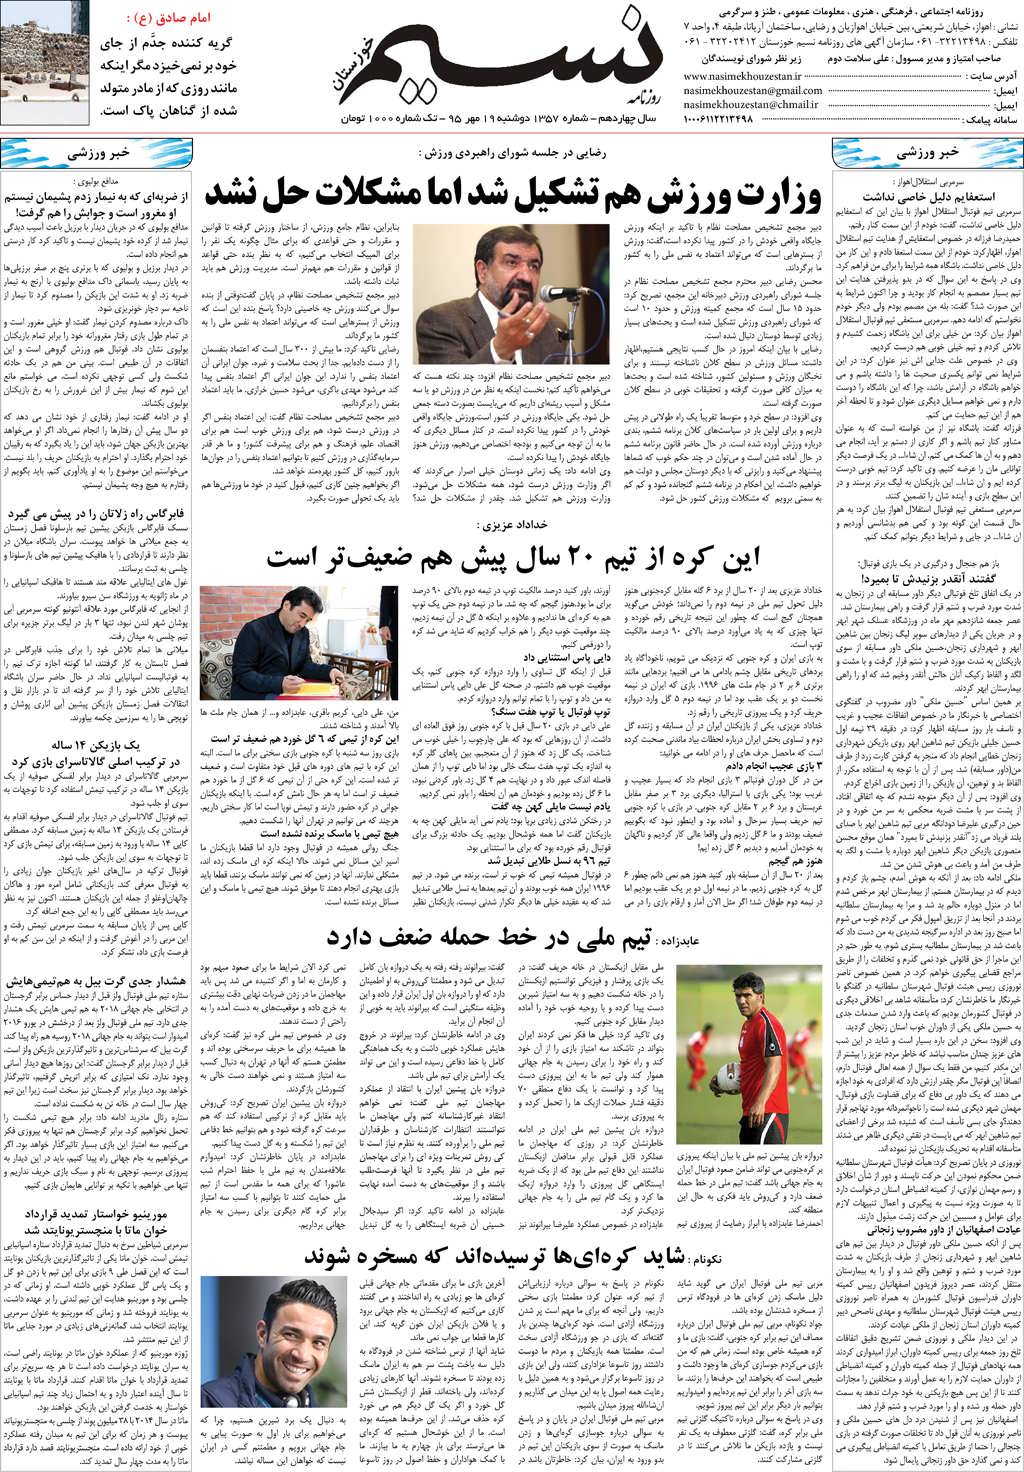 صفحه آخر روزنامه نسیم شماره 1357